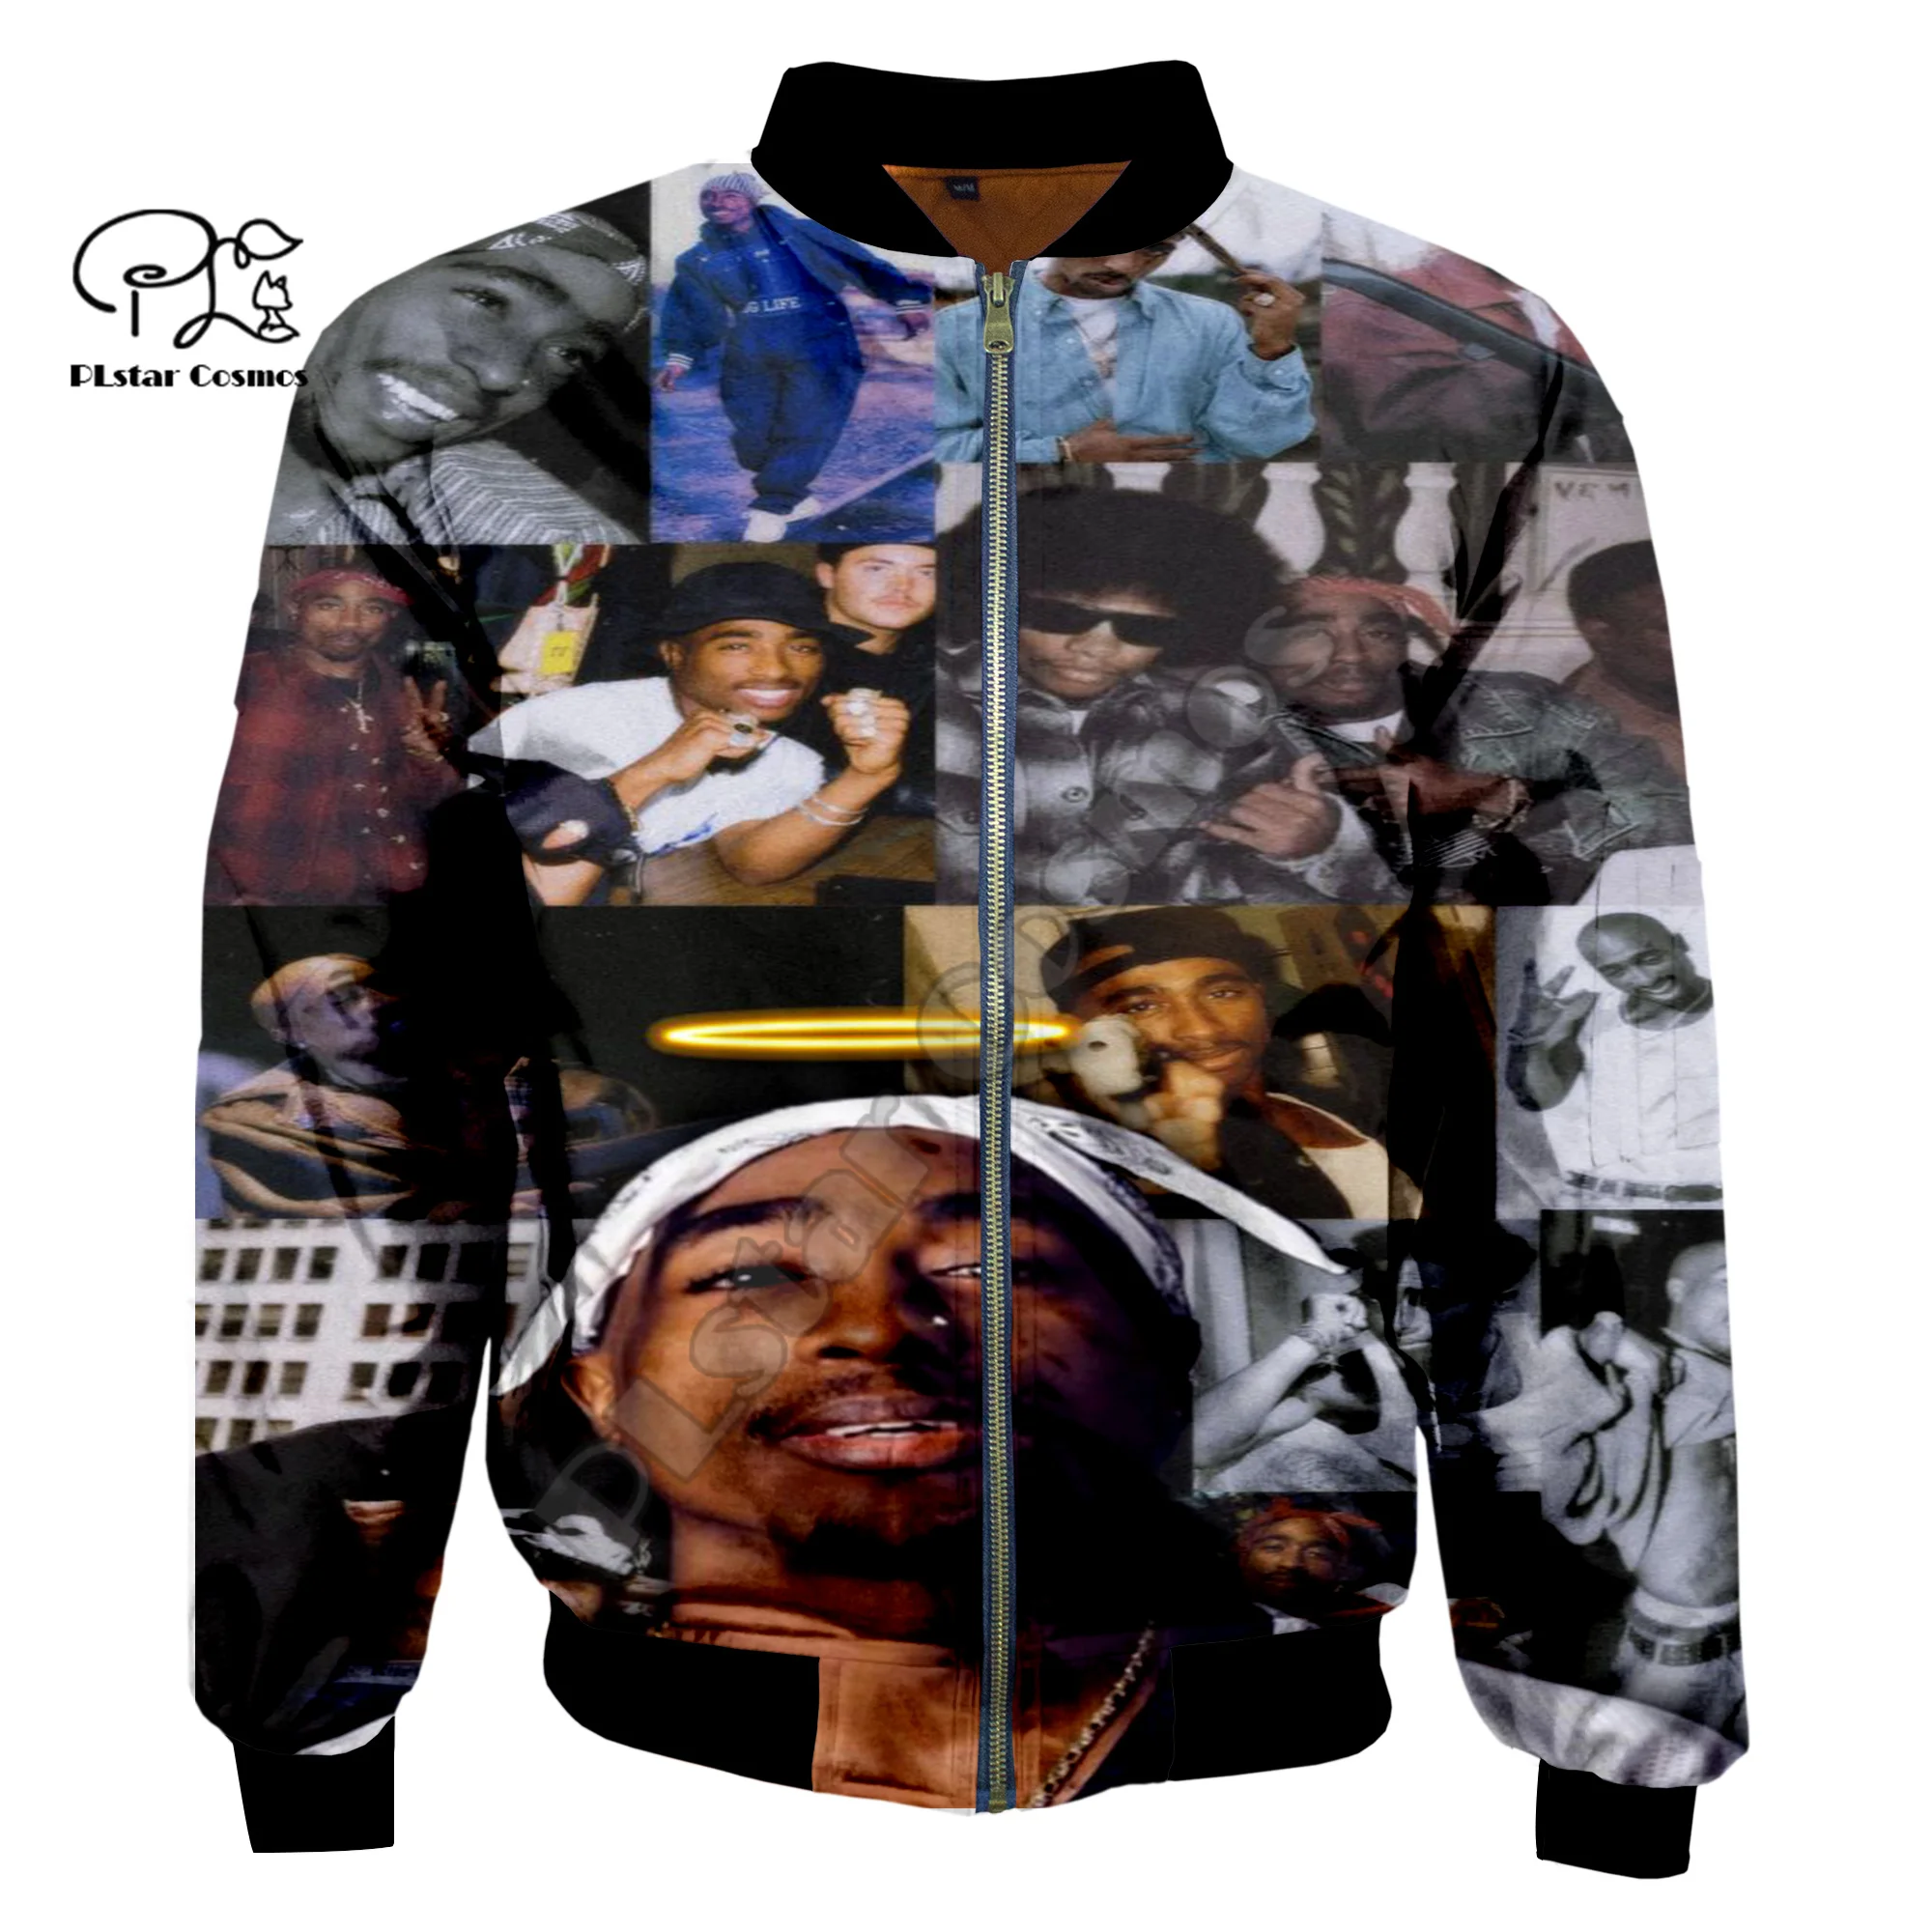 

PLstar Cosmos Tupac 2Pac Artist Rapper Singer HipHop Winter Warm Coat Streetwear 3Dprint Men/Women Windbreaker Bomber Jacket A3